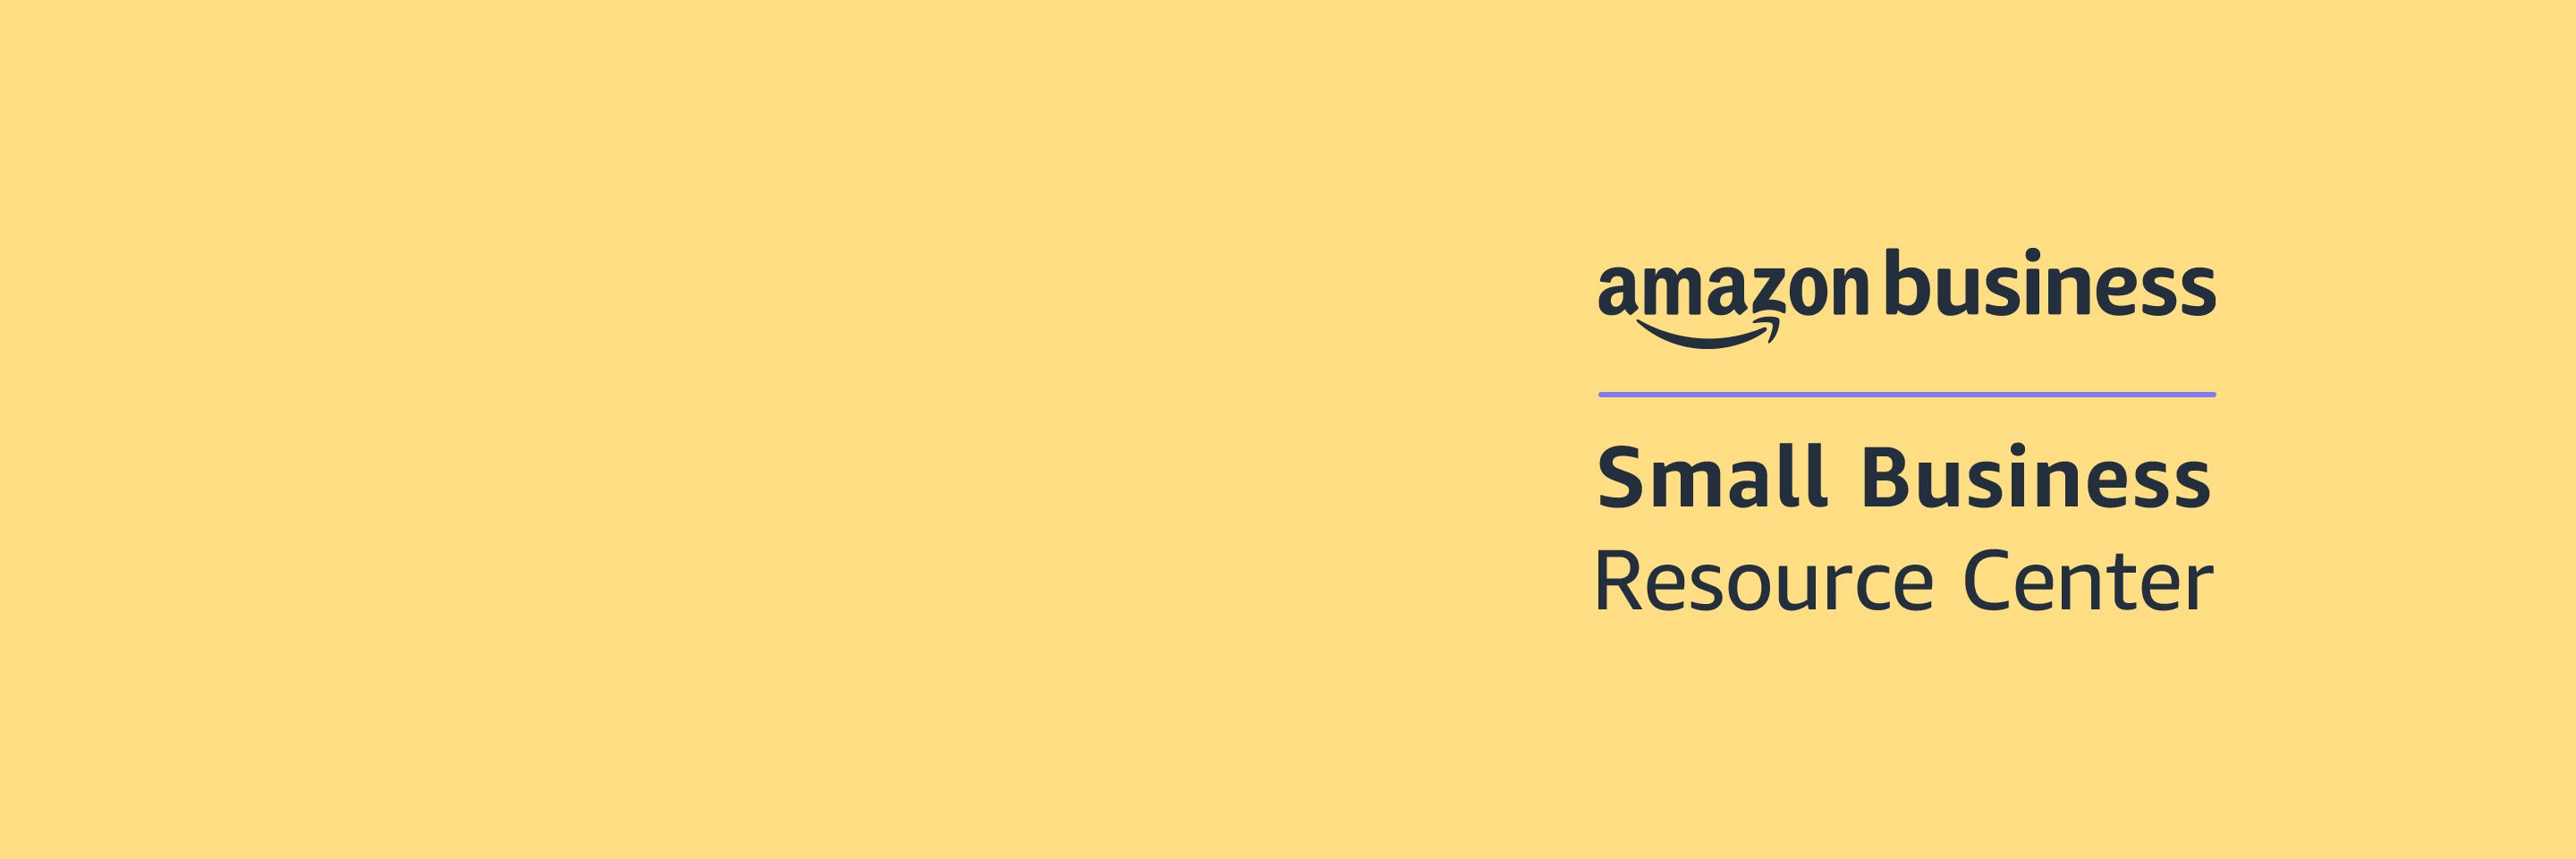 Centro de recursos para pequeñas empresas de Amazon Business 